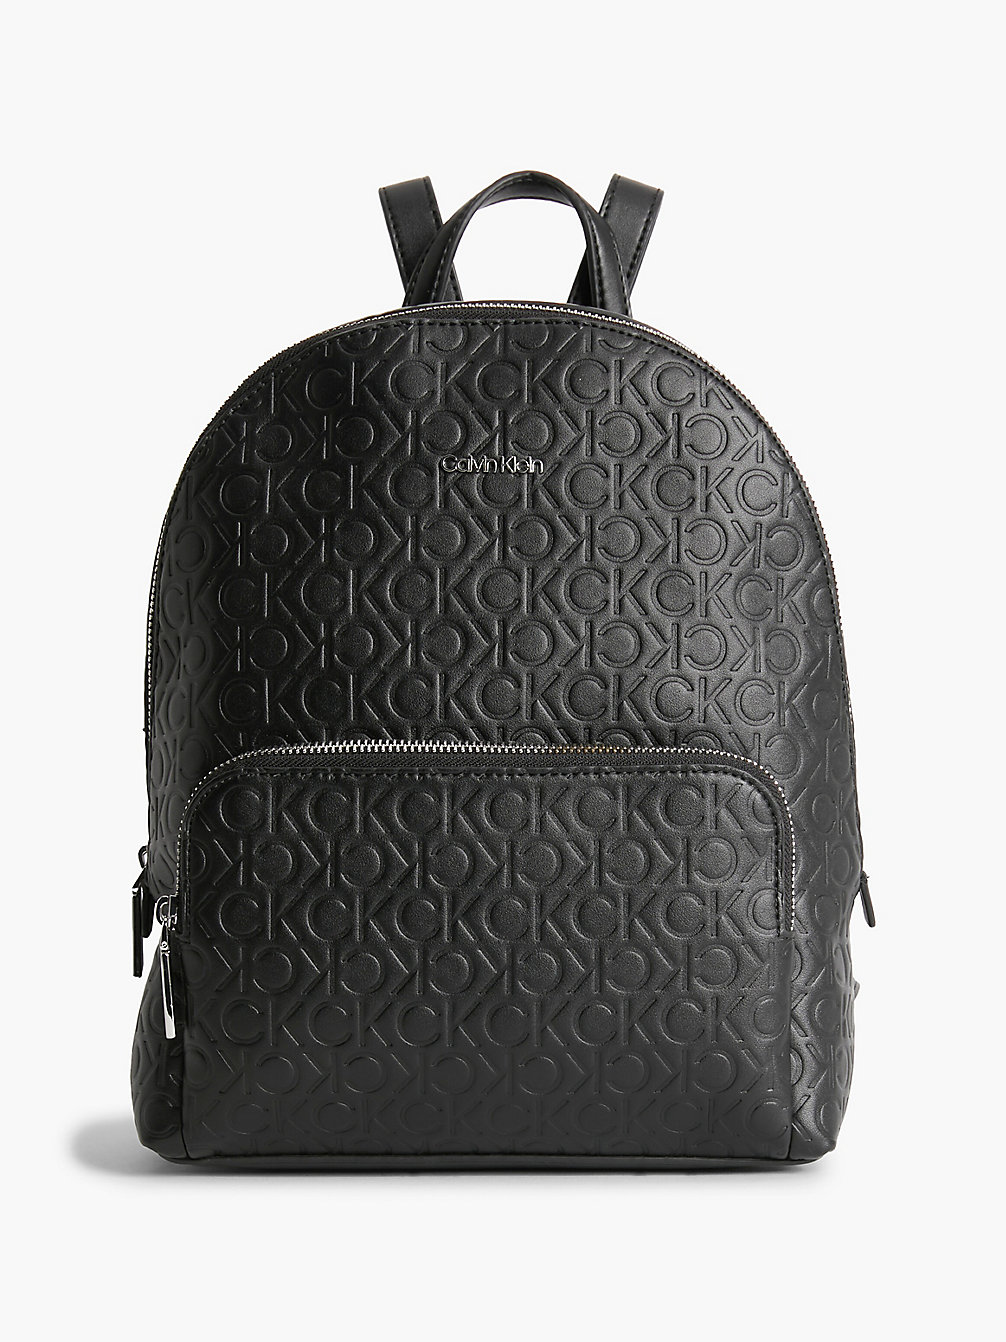 Women's Backpacks | Black & Leather Rucksacks | Calvin Klein®